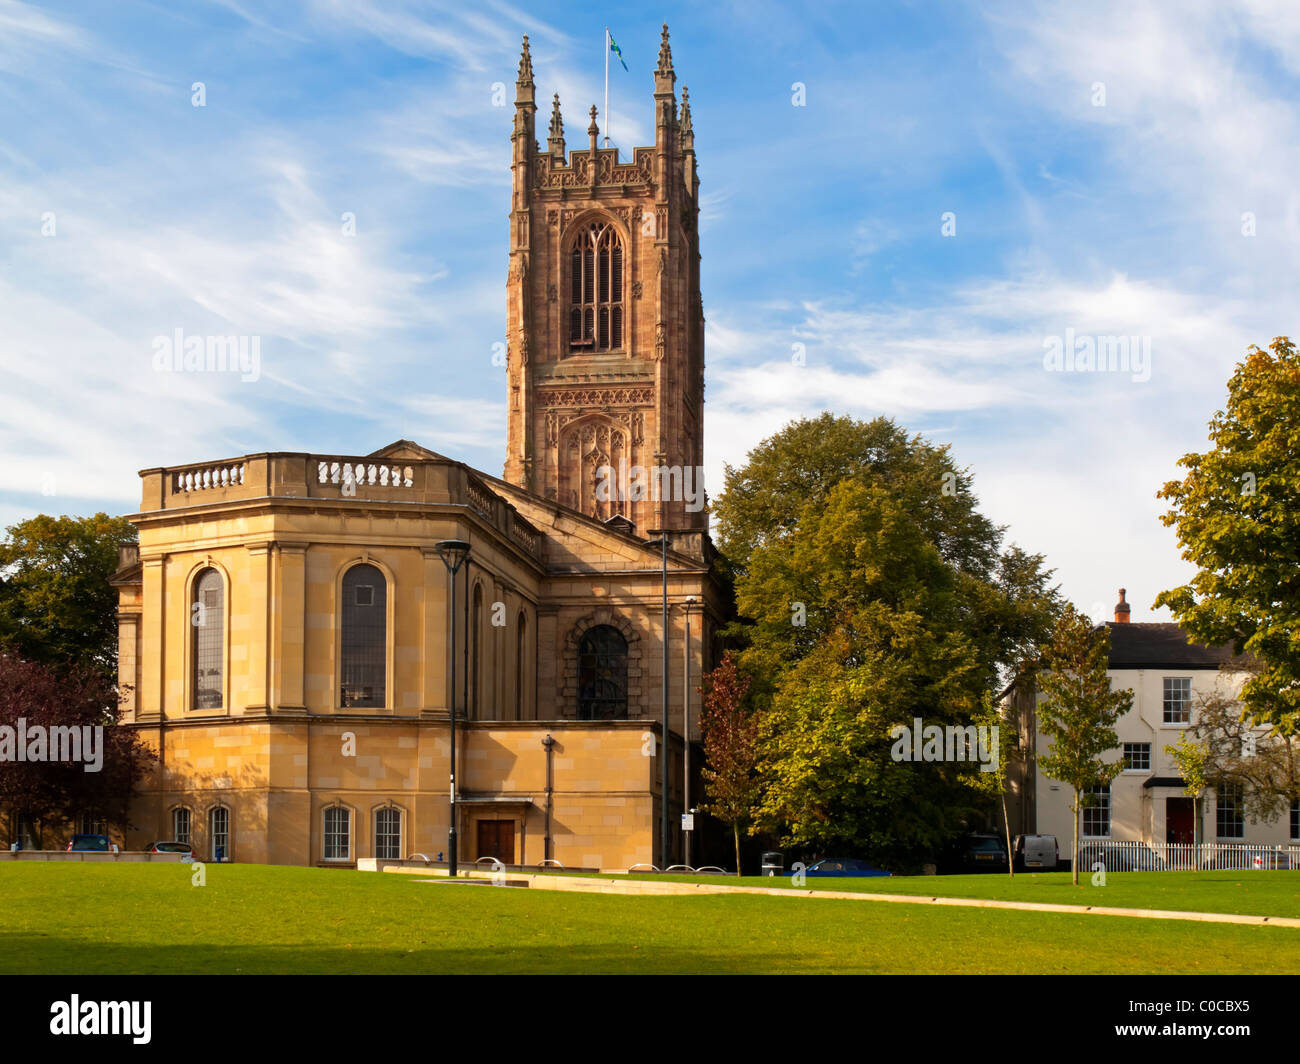 La cathédrale de Derby de tous les Saints à Derby en Angleterre la plus petite cathédrale anglicane en Angleterre construit c1350-1725 Banque D'Images